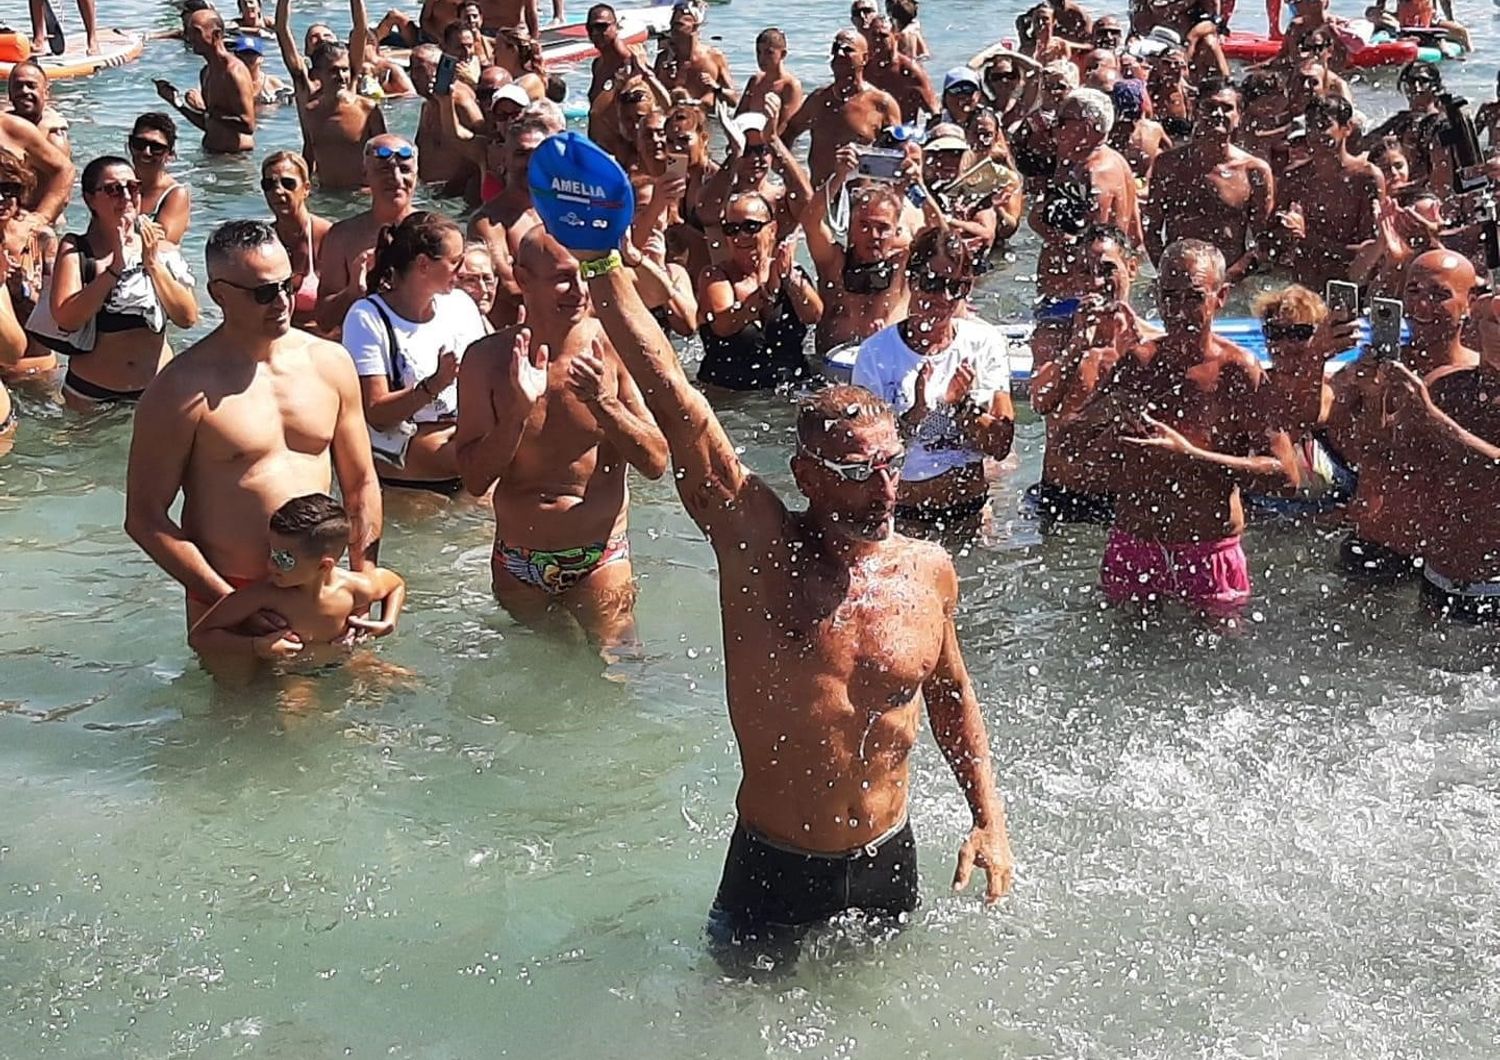 Corrado Sorrentino accolto dai sostenitori al suo arrivo a Cagliari dopo il giro della Sardegna a nuoto